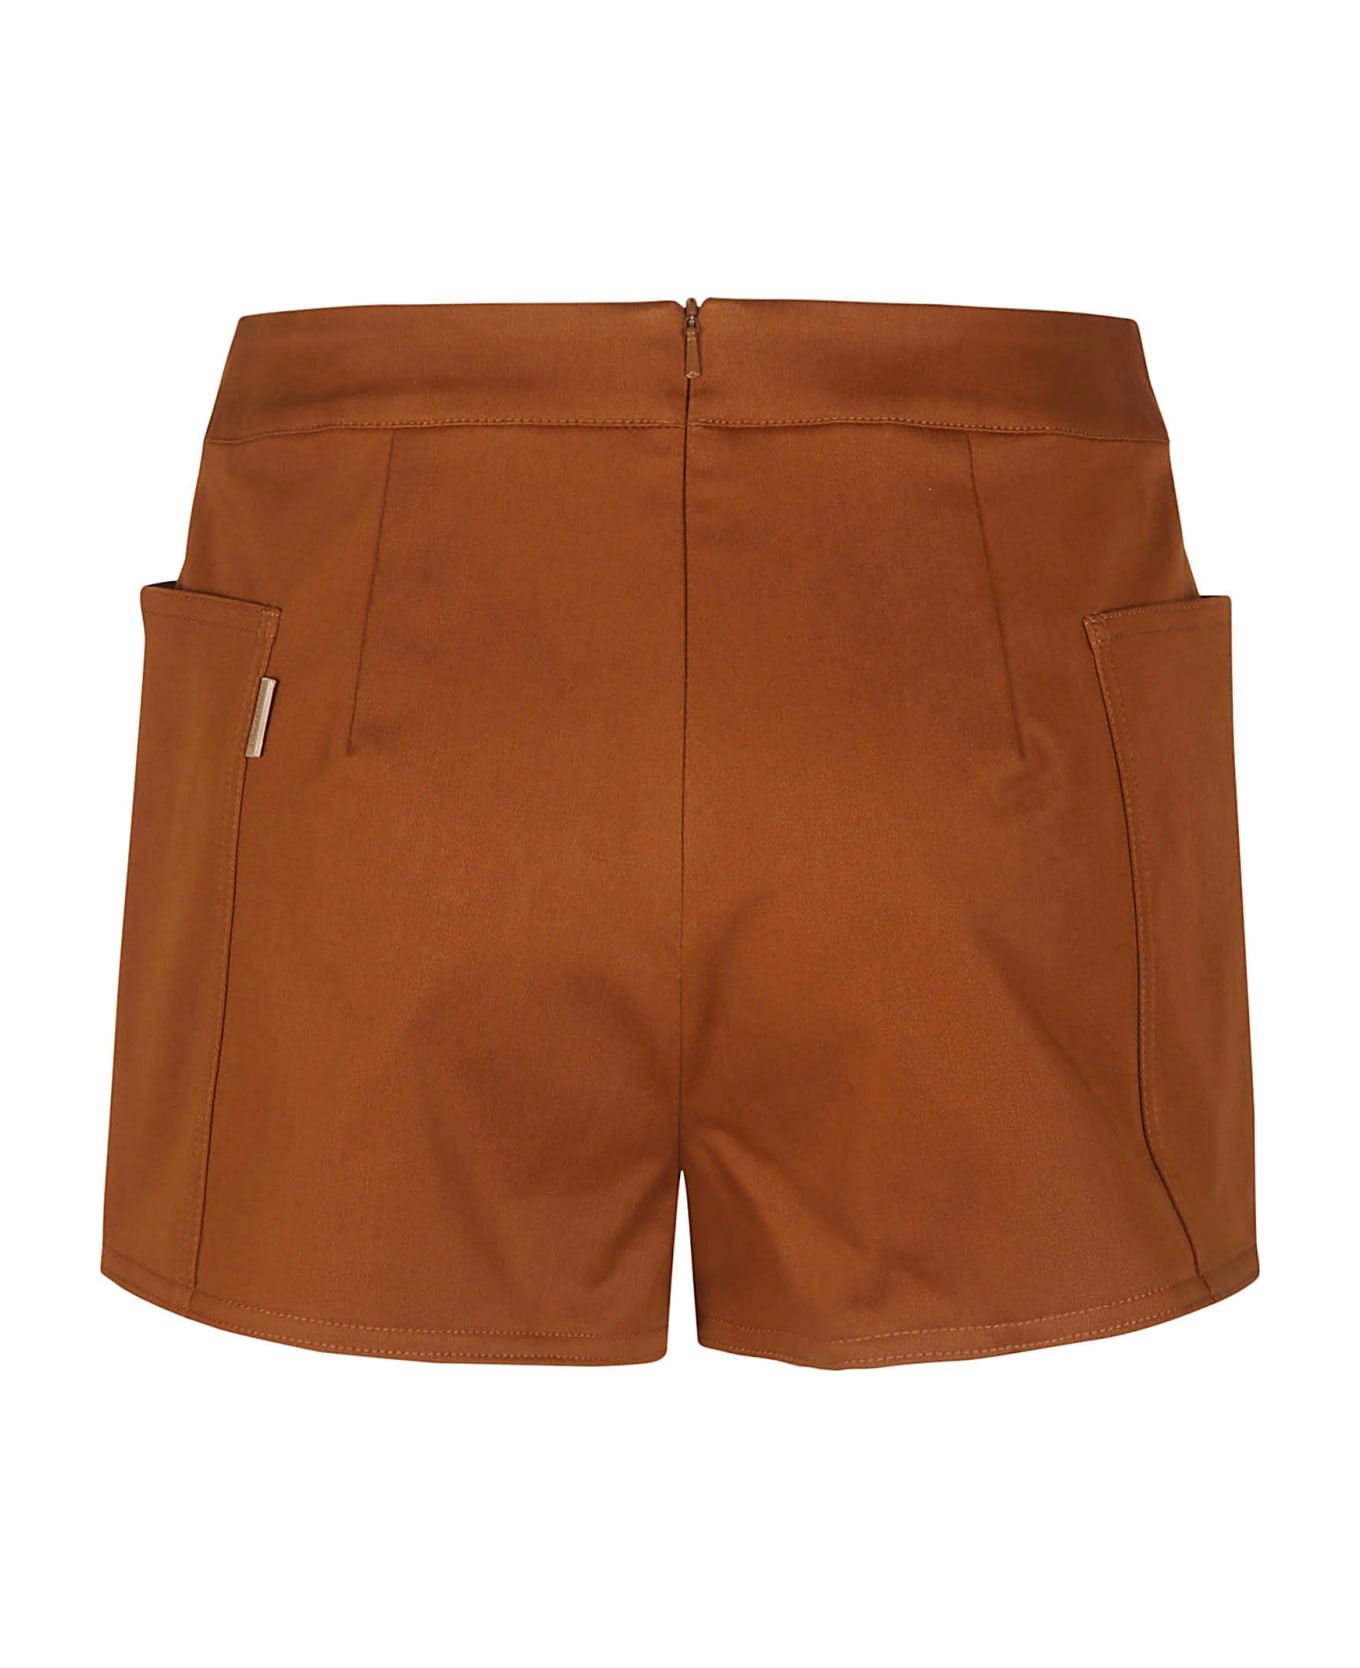 Max Mara Light Brown Riad Shorts - Brown ショートパンツ